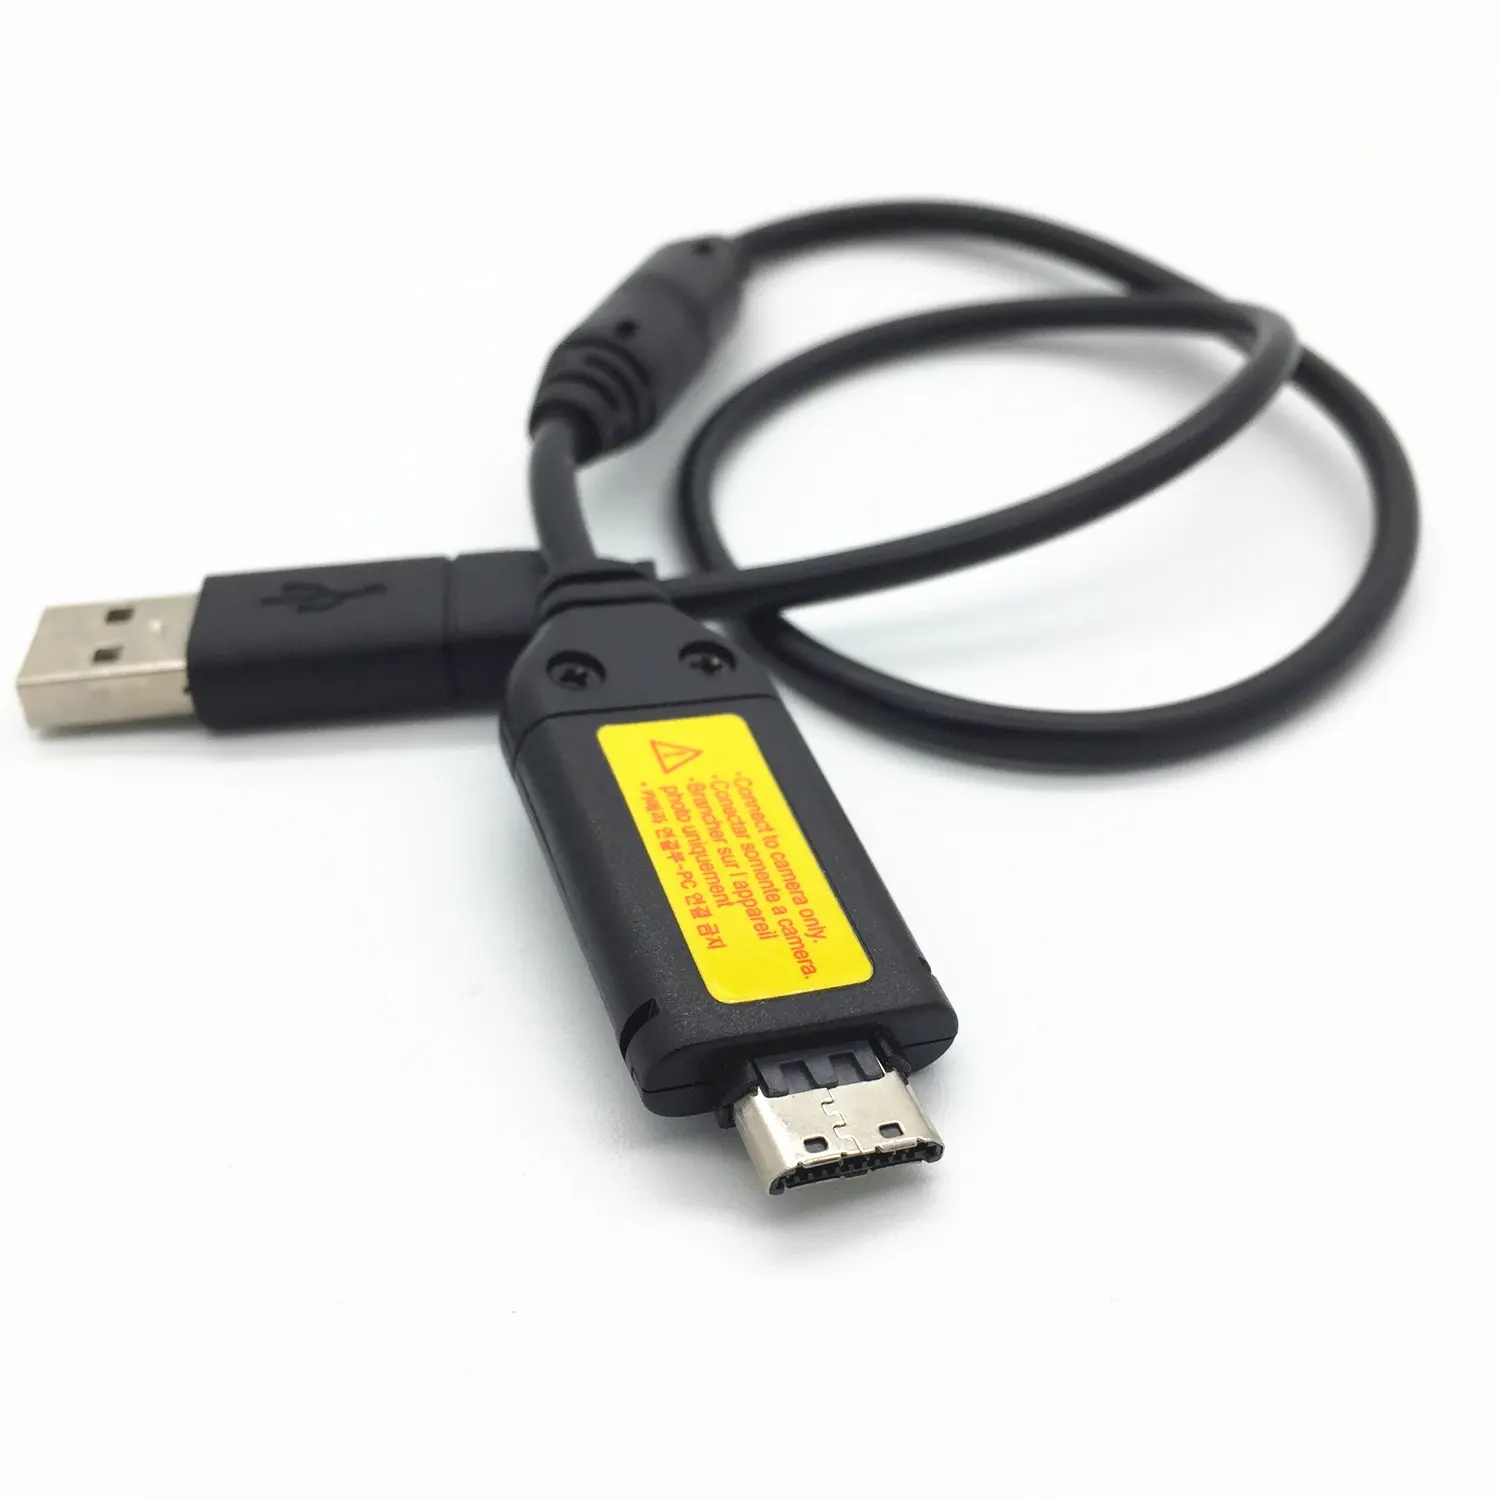 شاحن USB بيانات كابل شحن سامسونج PL10 PL20 PL50 PL51 PL55 PL57 PL60 PL65 PL80 PL81 PL100 PL101 PL120 PL150 PL151